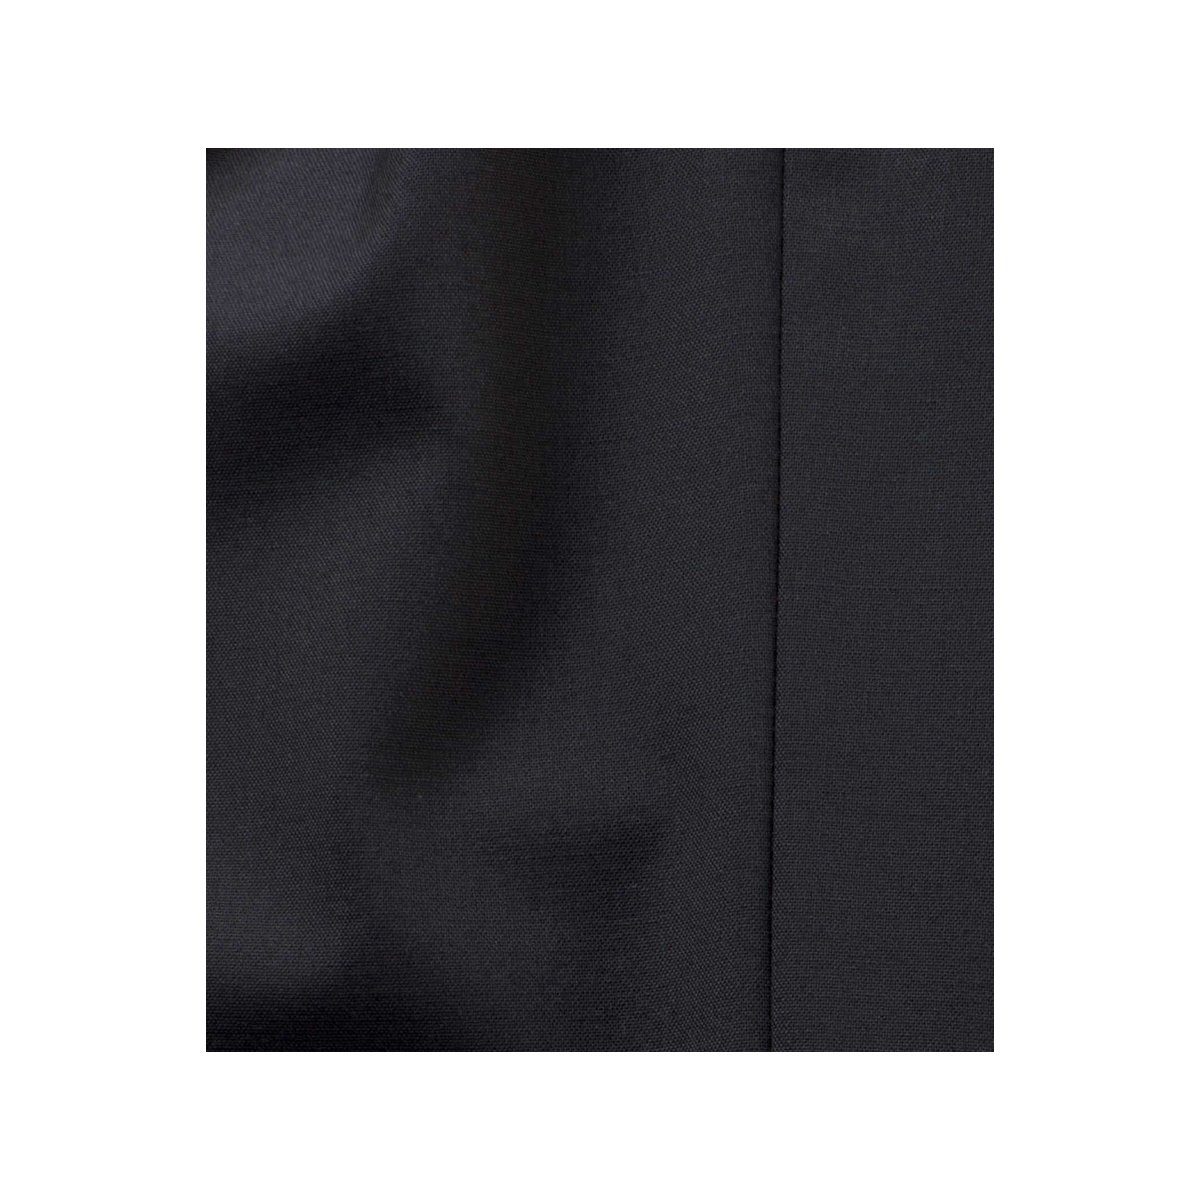 MEYER Anzughose schwarz Modern fit 09 Angabe) keine (1-tlg